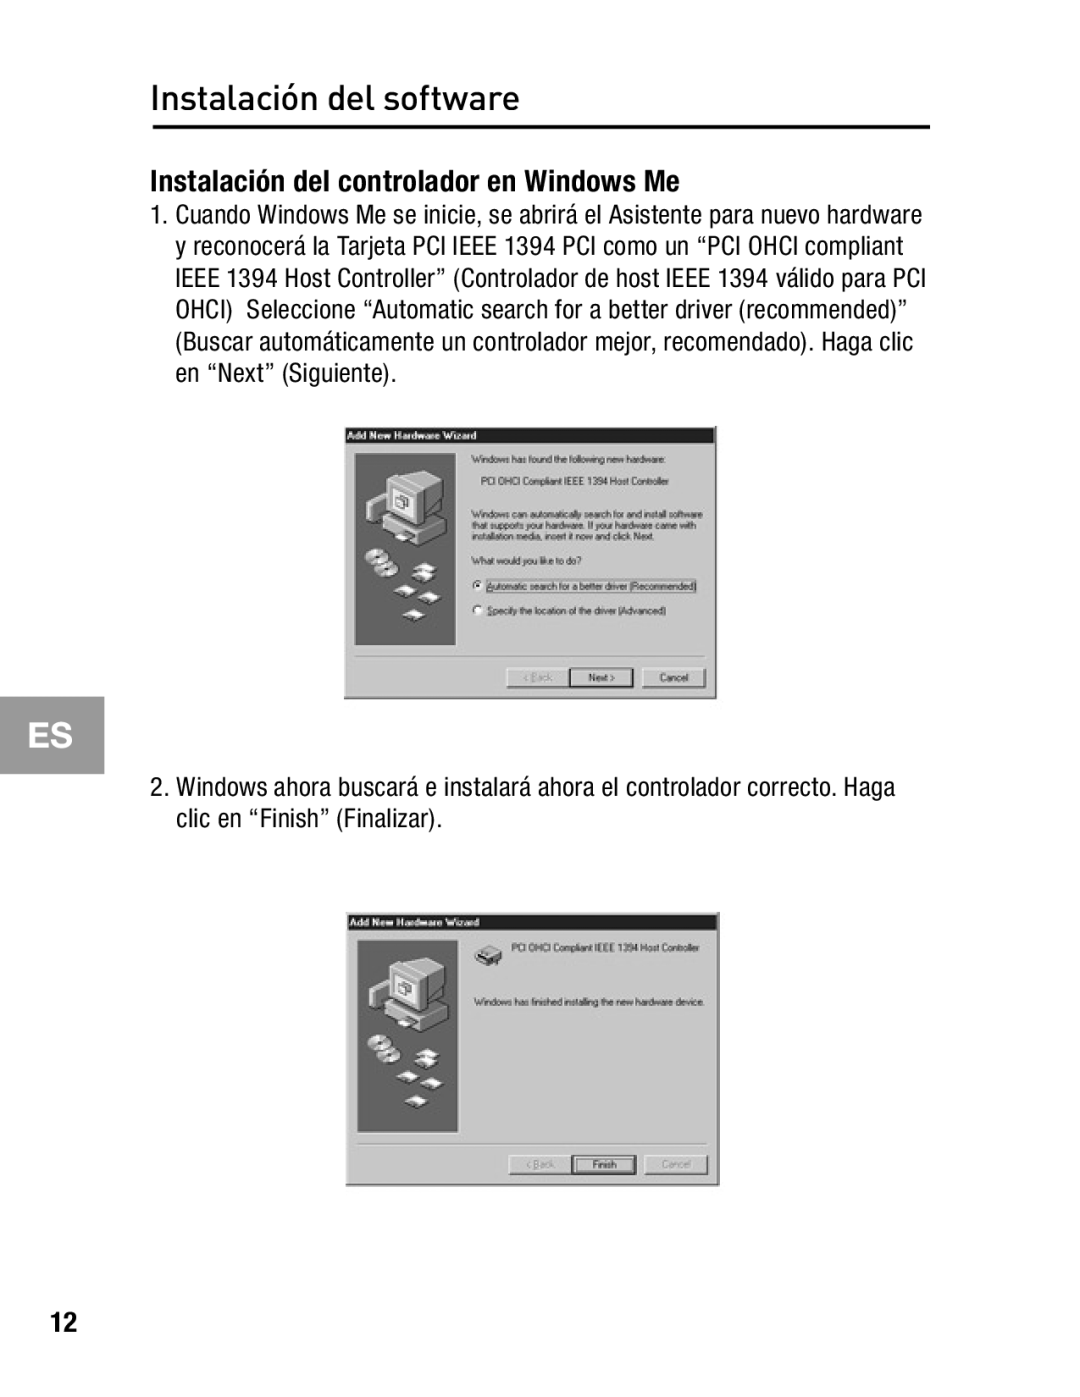 Belkin F5U503, F5U502 user manual Instalación del controlador en Windows Me, Instalación del software 